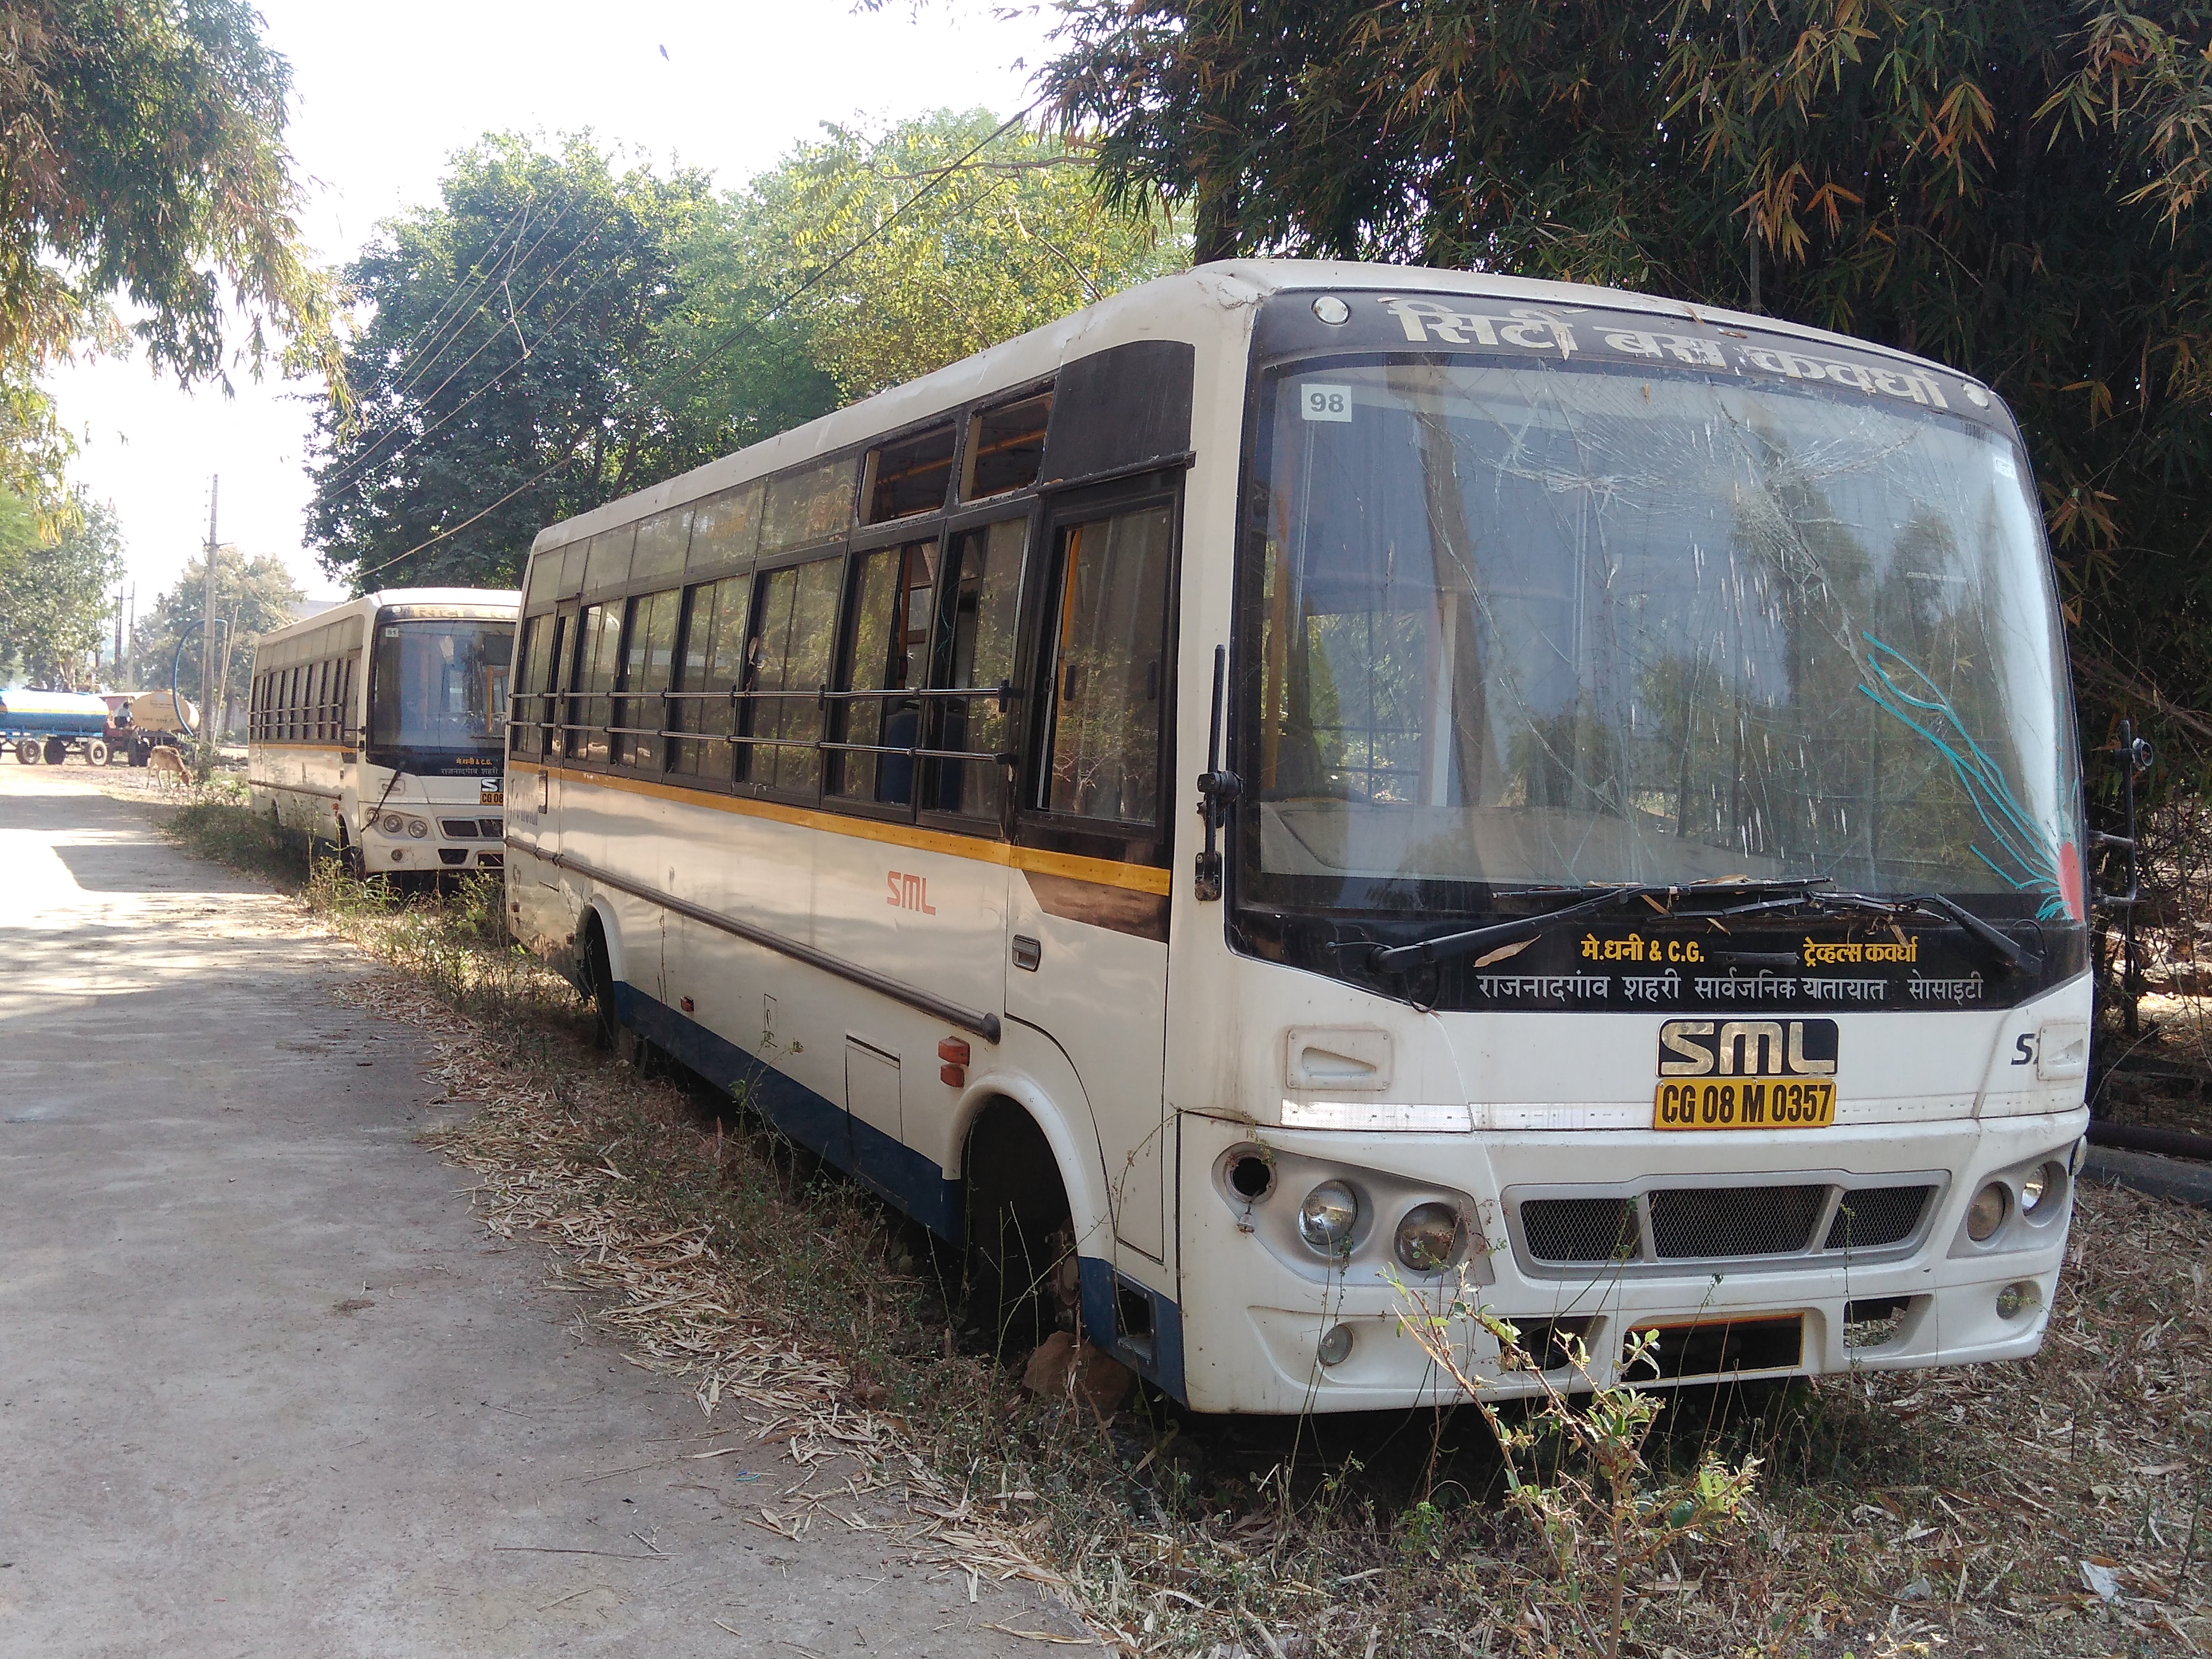 सिटी बस शुरू करने शासन को खर्च करने होंगे 50 लाख रुपए